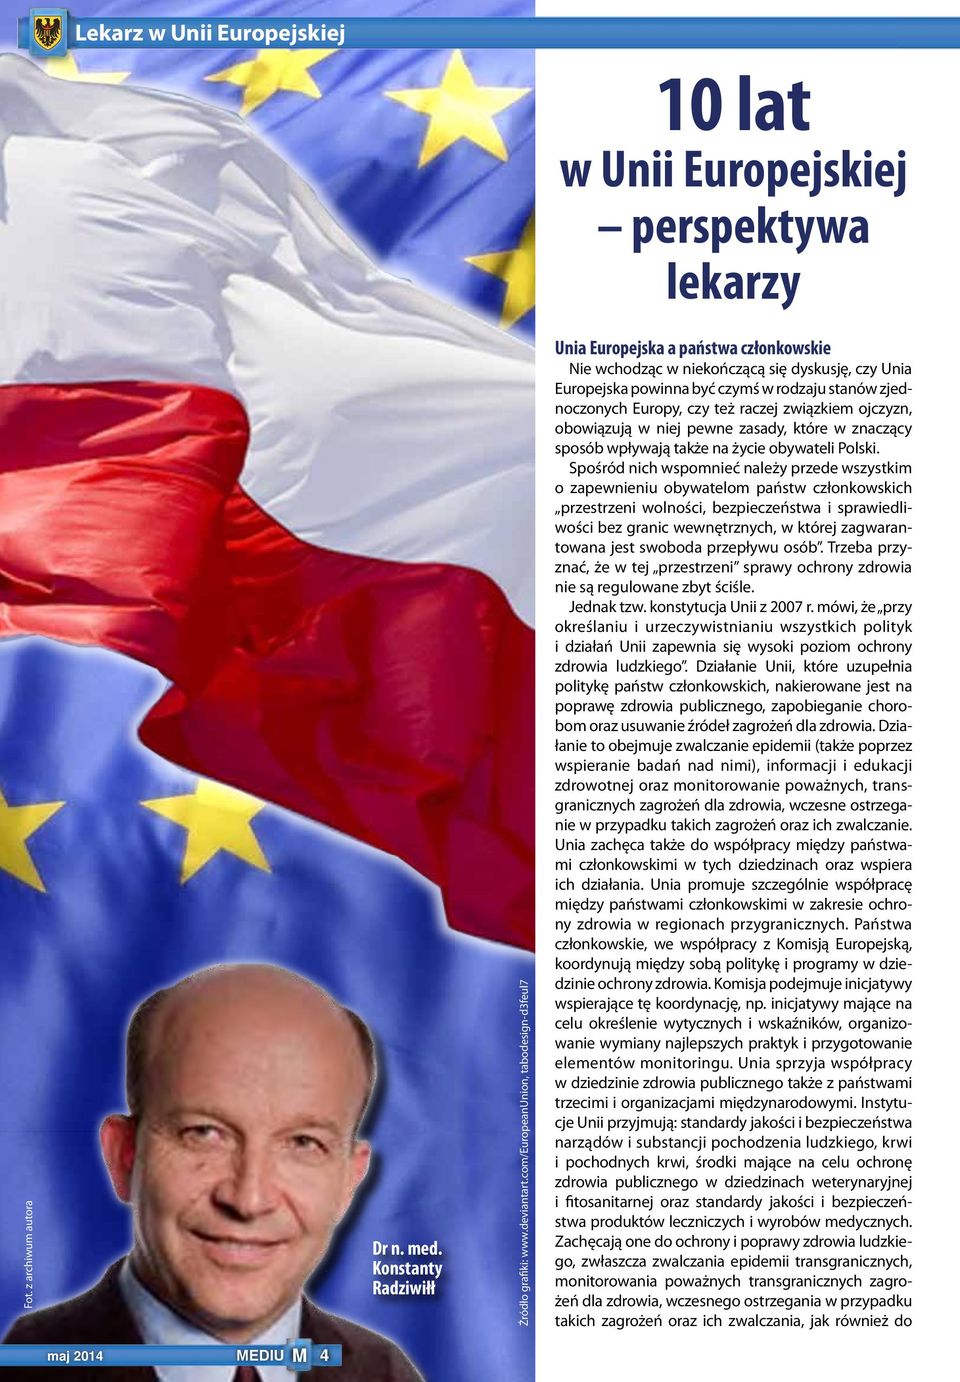 też raczej związkiem ojczyzn, obowiązują w niej pewne zasady, które w znaczący sposób wpływają także na życie obywateli Polski.